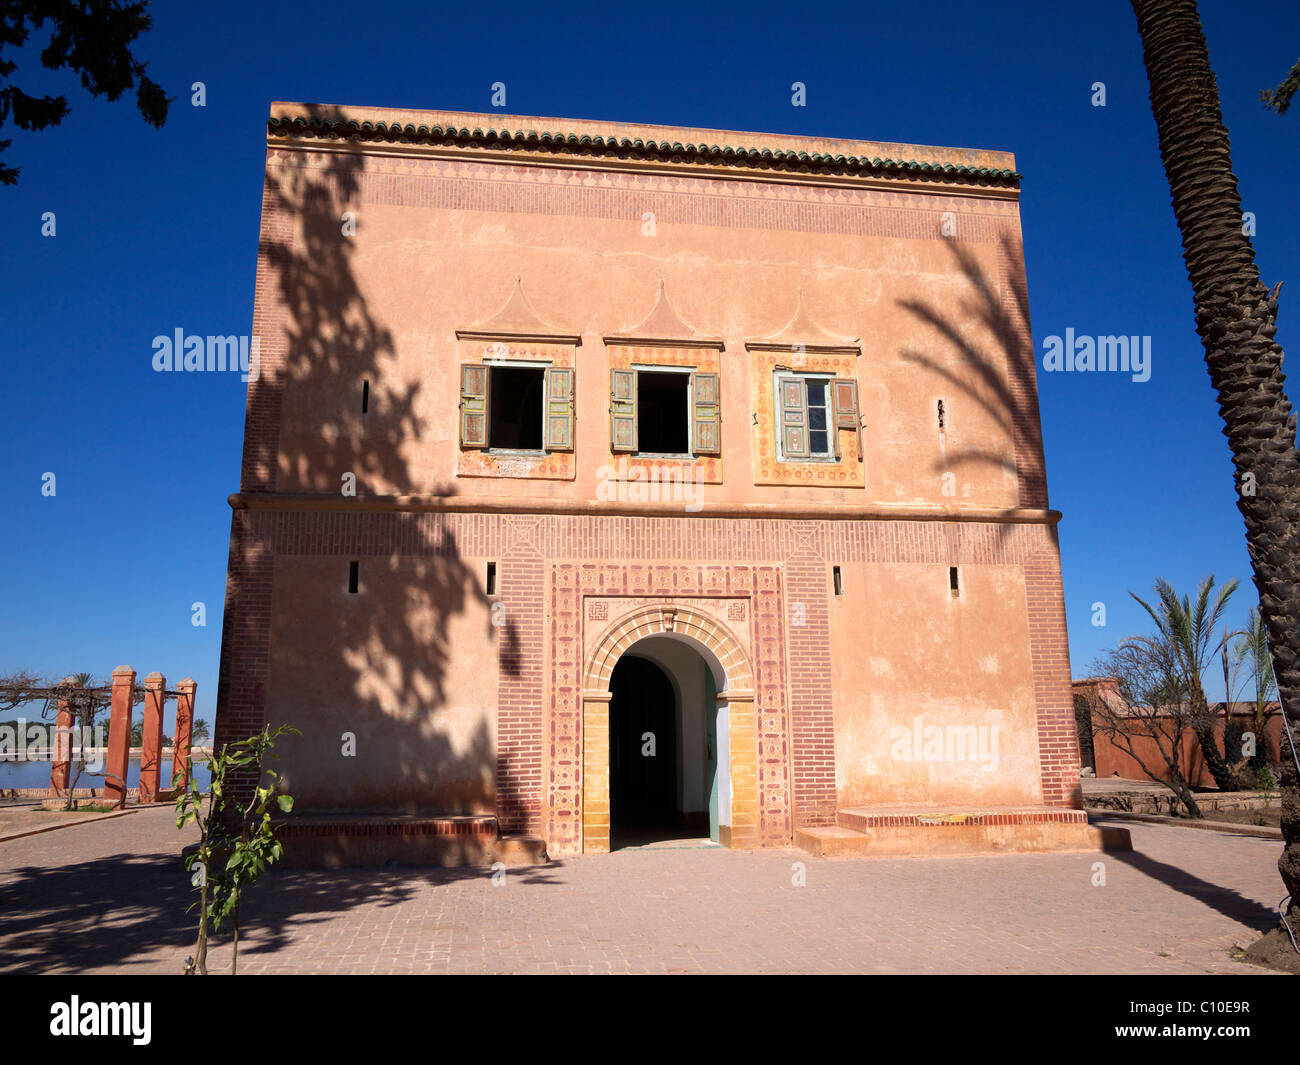 Facade of the 19th century pavilion at the Menara Gardens Marrakech Morocco Stock Photo